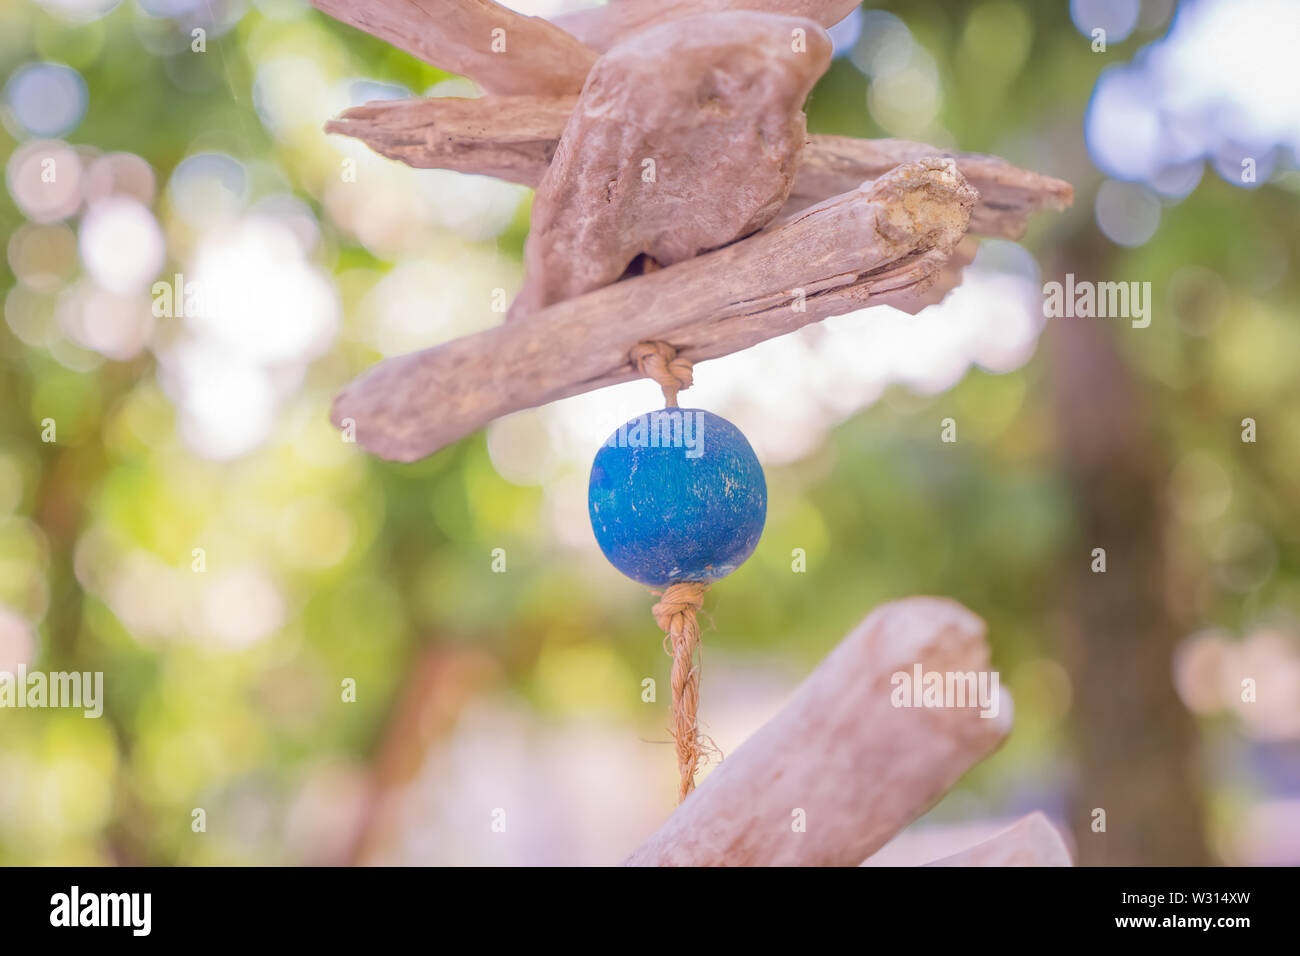 Pesci di legno simbolo. Pesci di legno appesa sulla fune. Sfera blu appeso sulla fune. Ecologico di giocattoli di legno. Giocattoli del vento. Eco giocattoli. Foto Stock